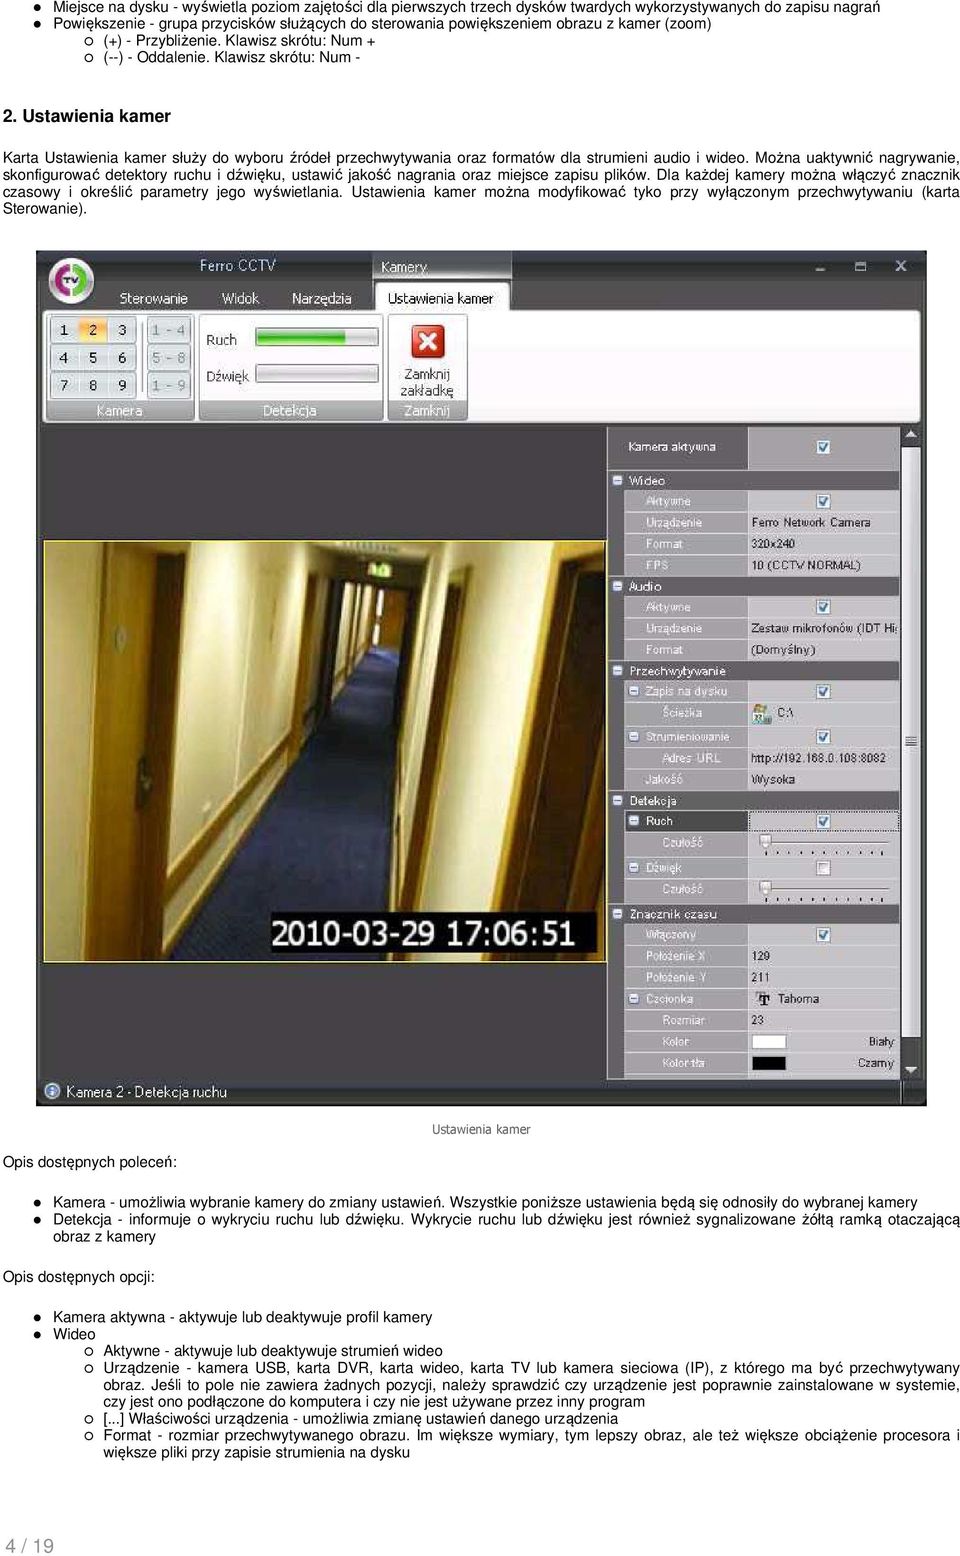 Ustawienia kamer Karta Ustawienia kamer służy do wyboru źródeł przechwytywania oraz formatów dla strumieni audio i wideo.